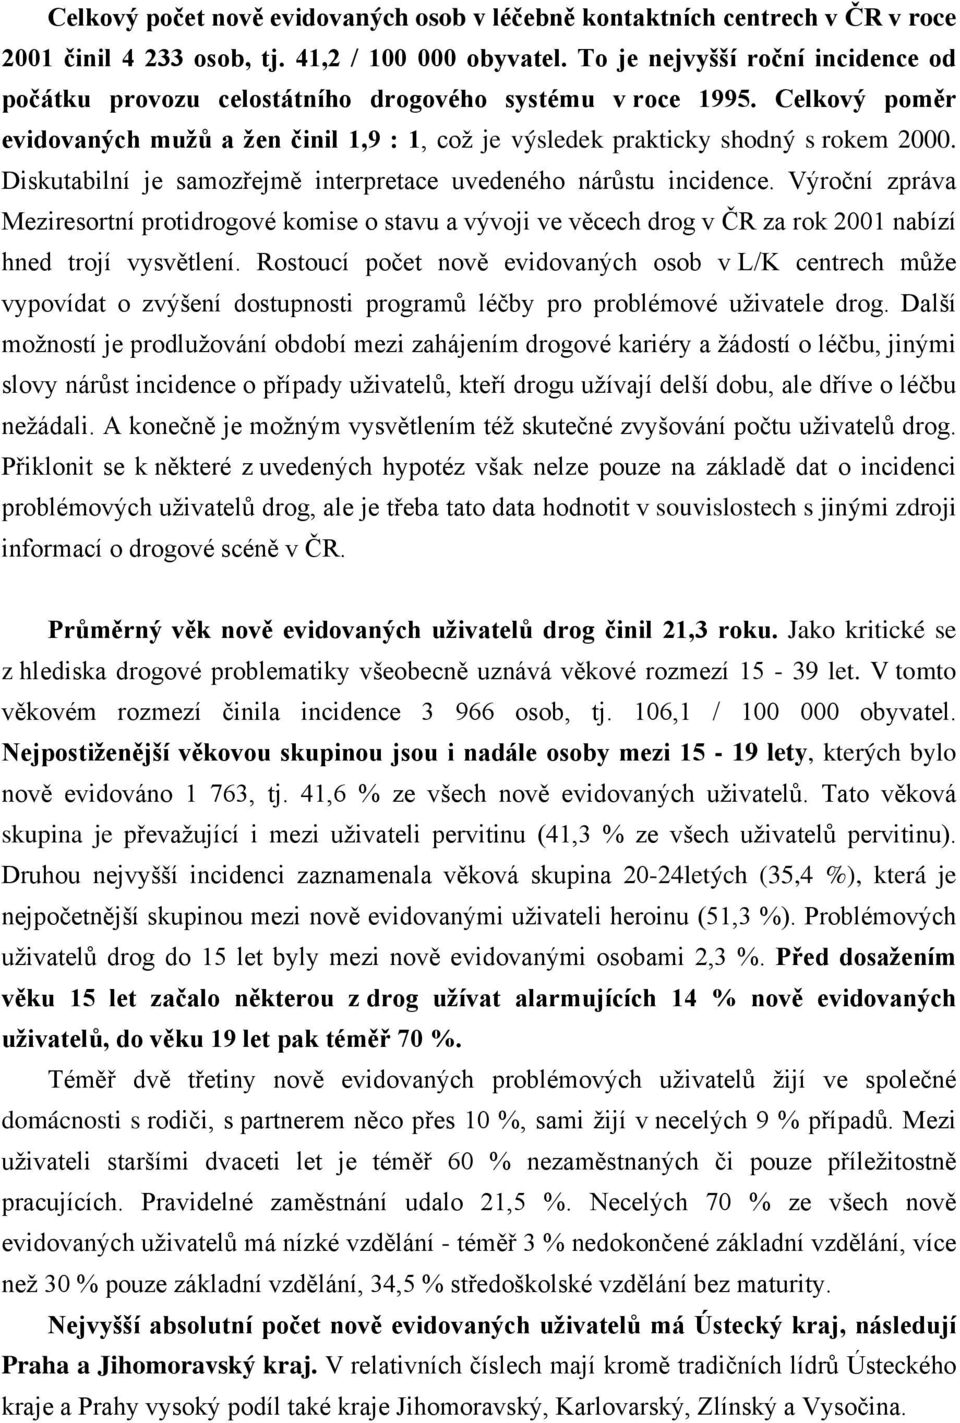 Diskutabilní je samozřejmě interpretace uvedeného nárůstu incidence. Výroční zpráva Meziresortní protidrogové komise o stavu a vývoji ve věcech drog v ČR za rok 2001 nabízí hned trojí vysvětlení.